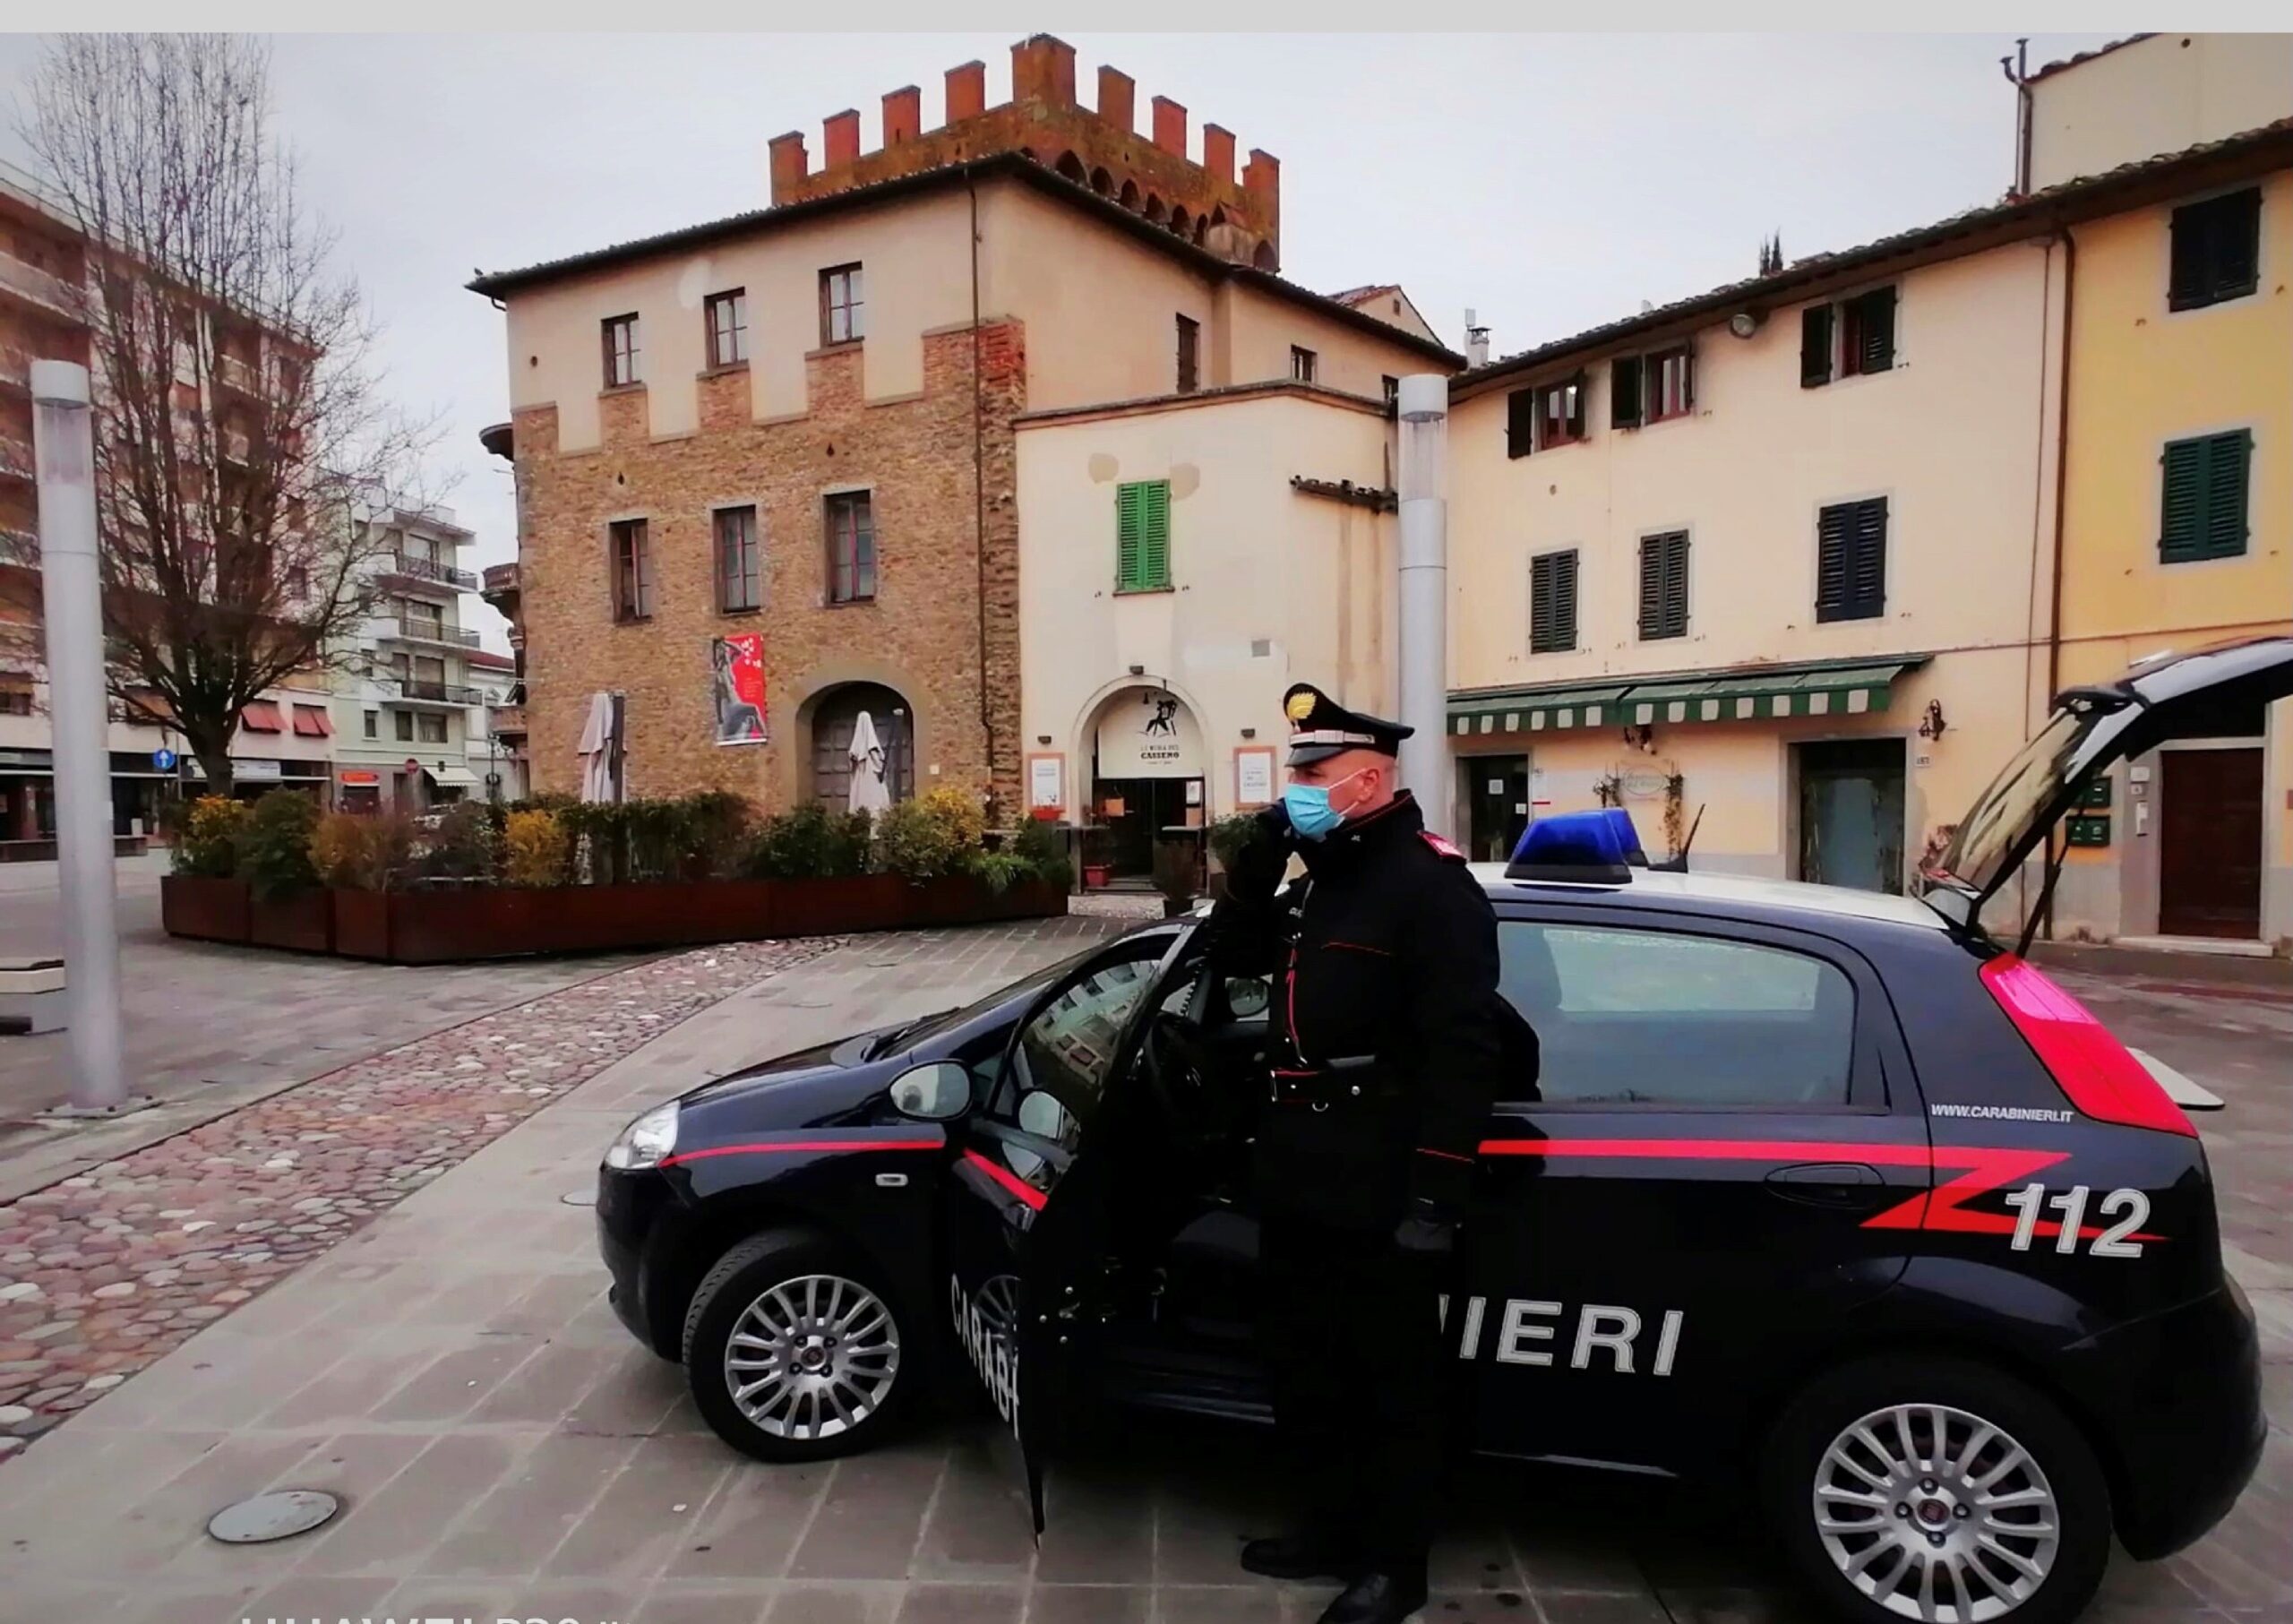 Colpo alla microcriminalità in Valdarno. Tre ladri identificati e denunciati dai Carabinieri